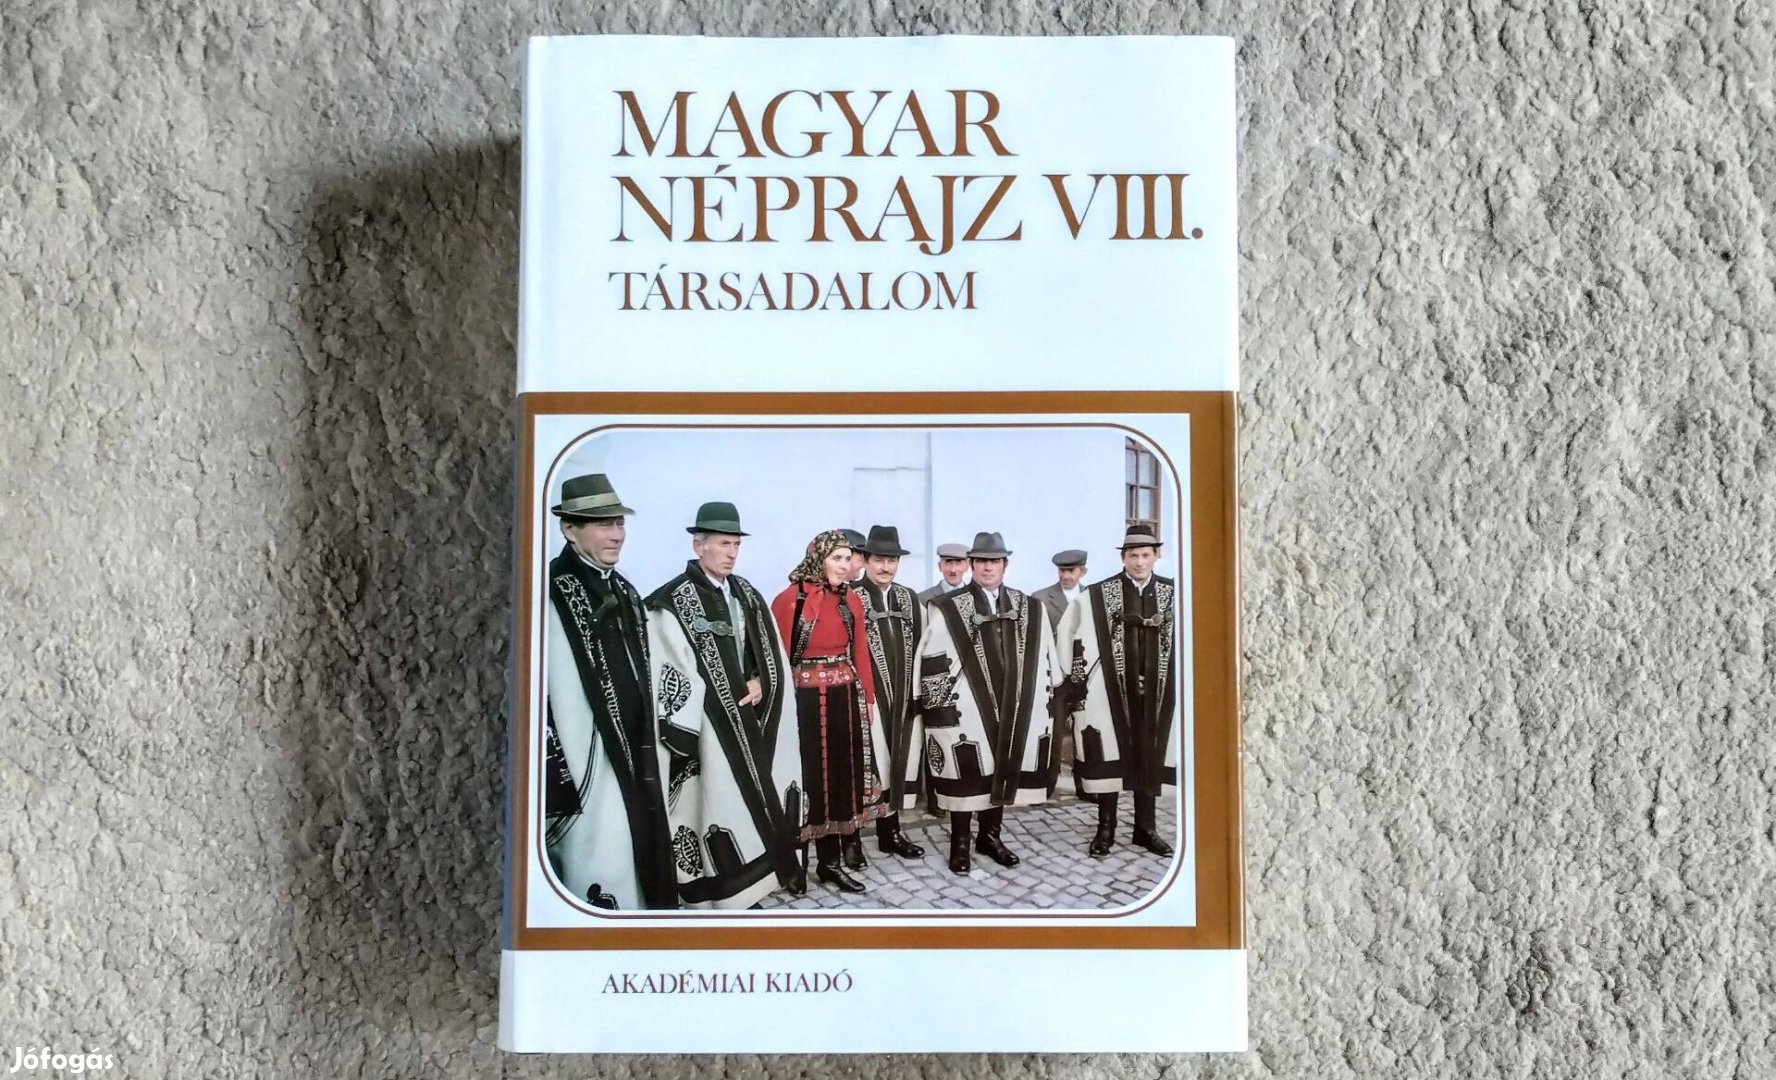 Magyar néprajz VIII - Társadalom - Paládi-Kovács Attila (szerk.)